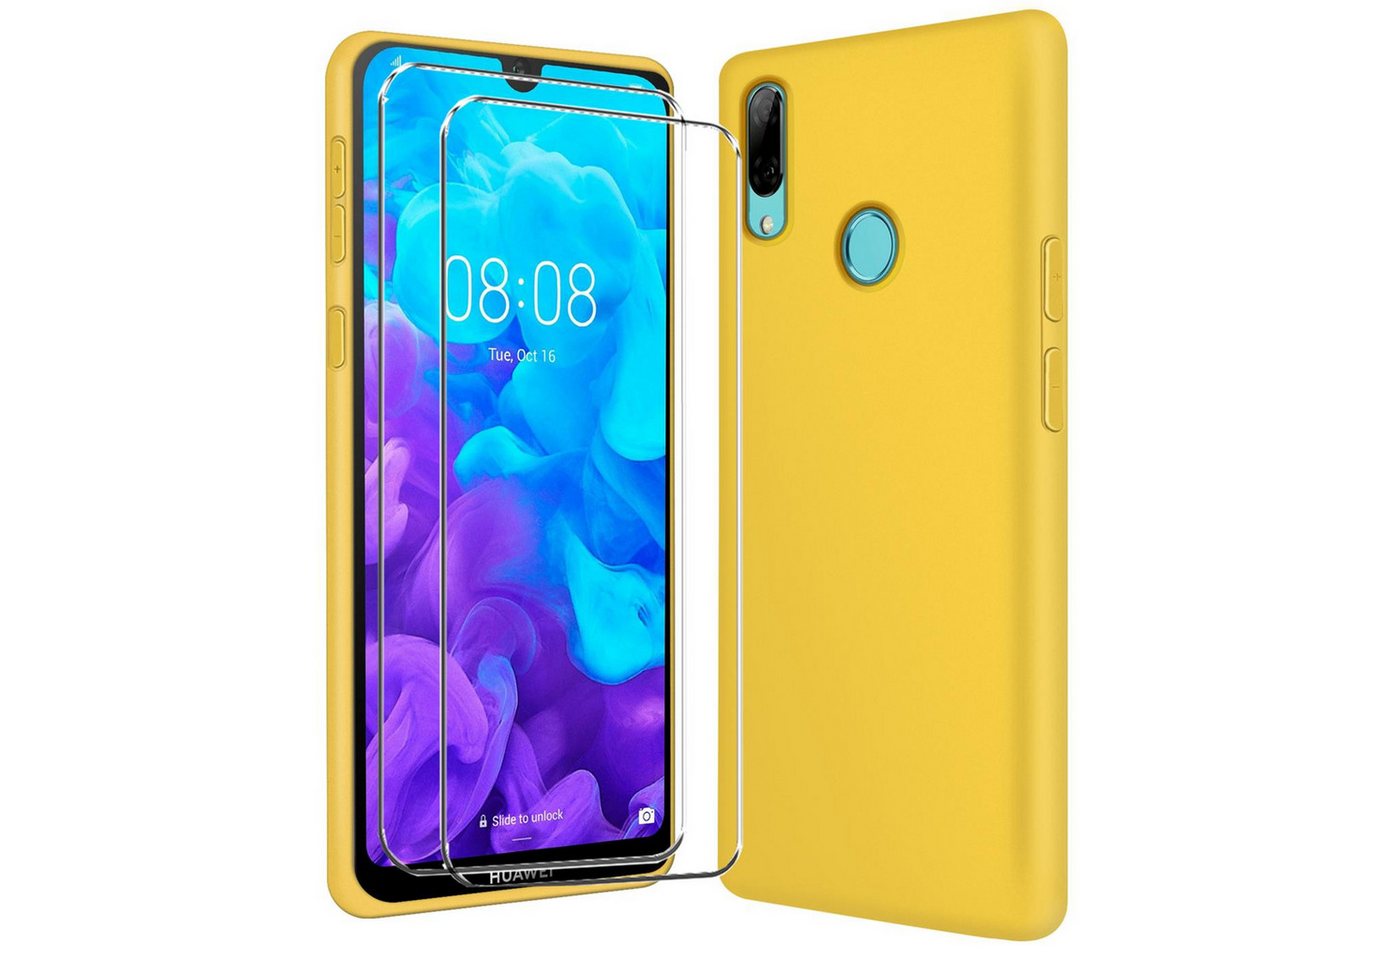 CoolGadget Handyhülle Gelb als 2in1 Schutz Cover Set für das Huawei P Smart 2019 6,21 Zoll, 2x Glas Display Schutz Folie + 1x TPU Case Hülle für P Smart 2019 von CoolGadget